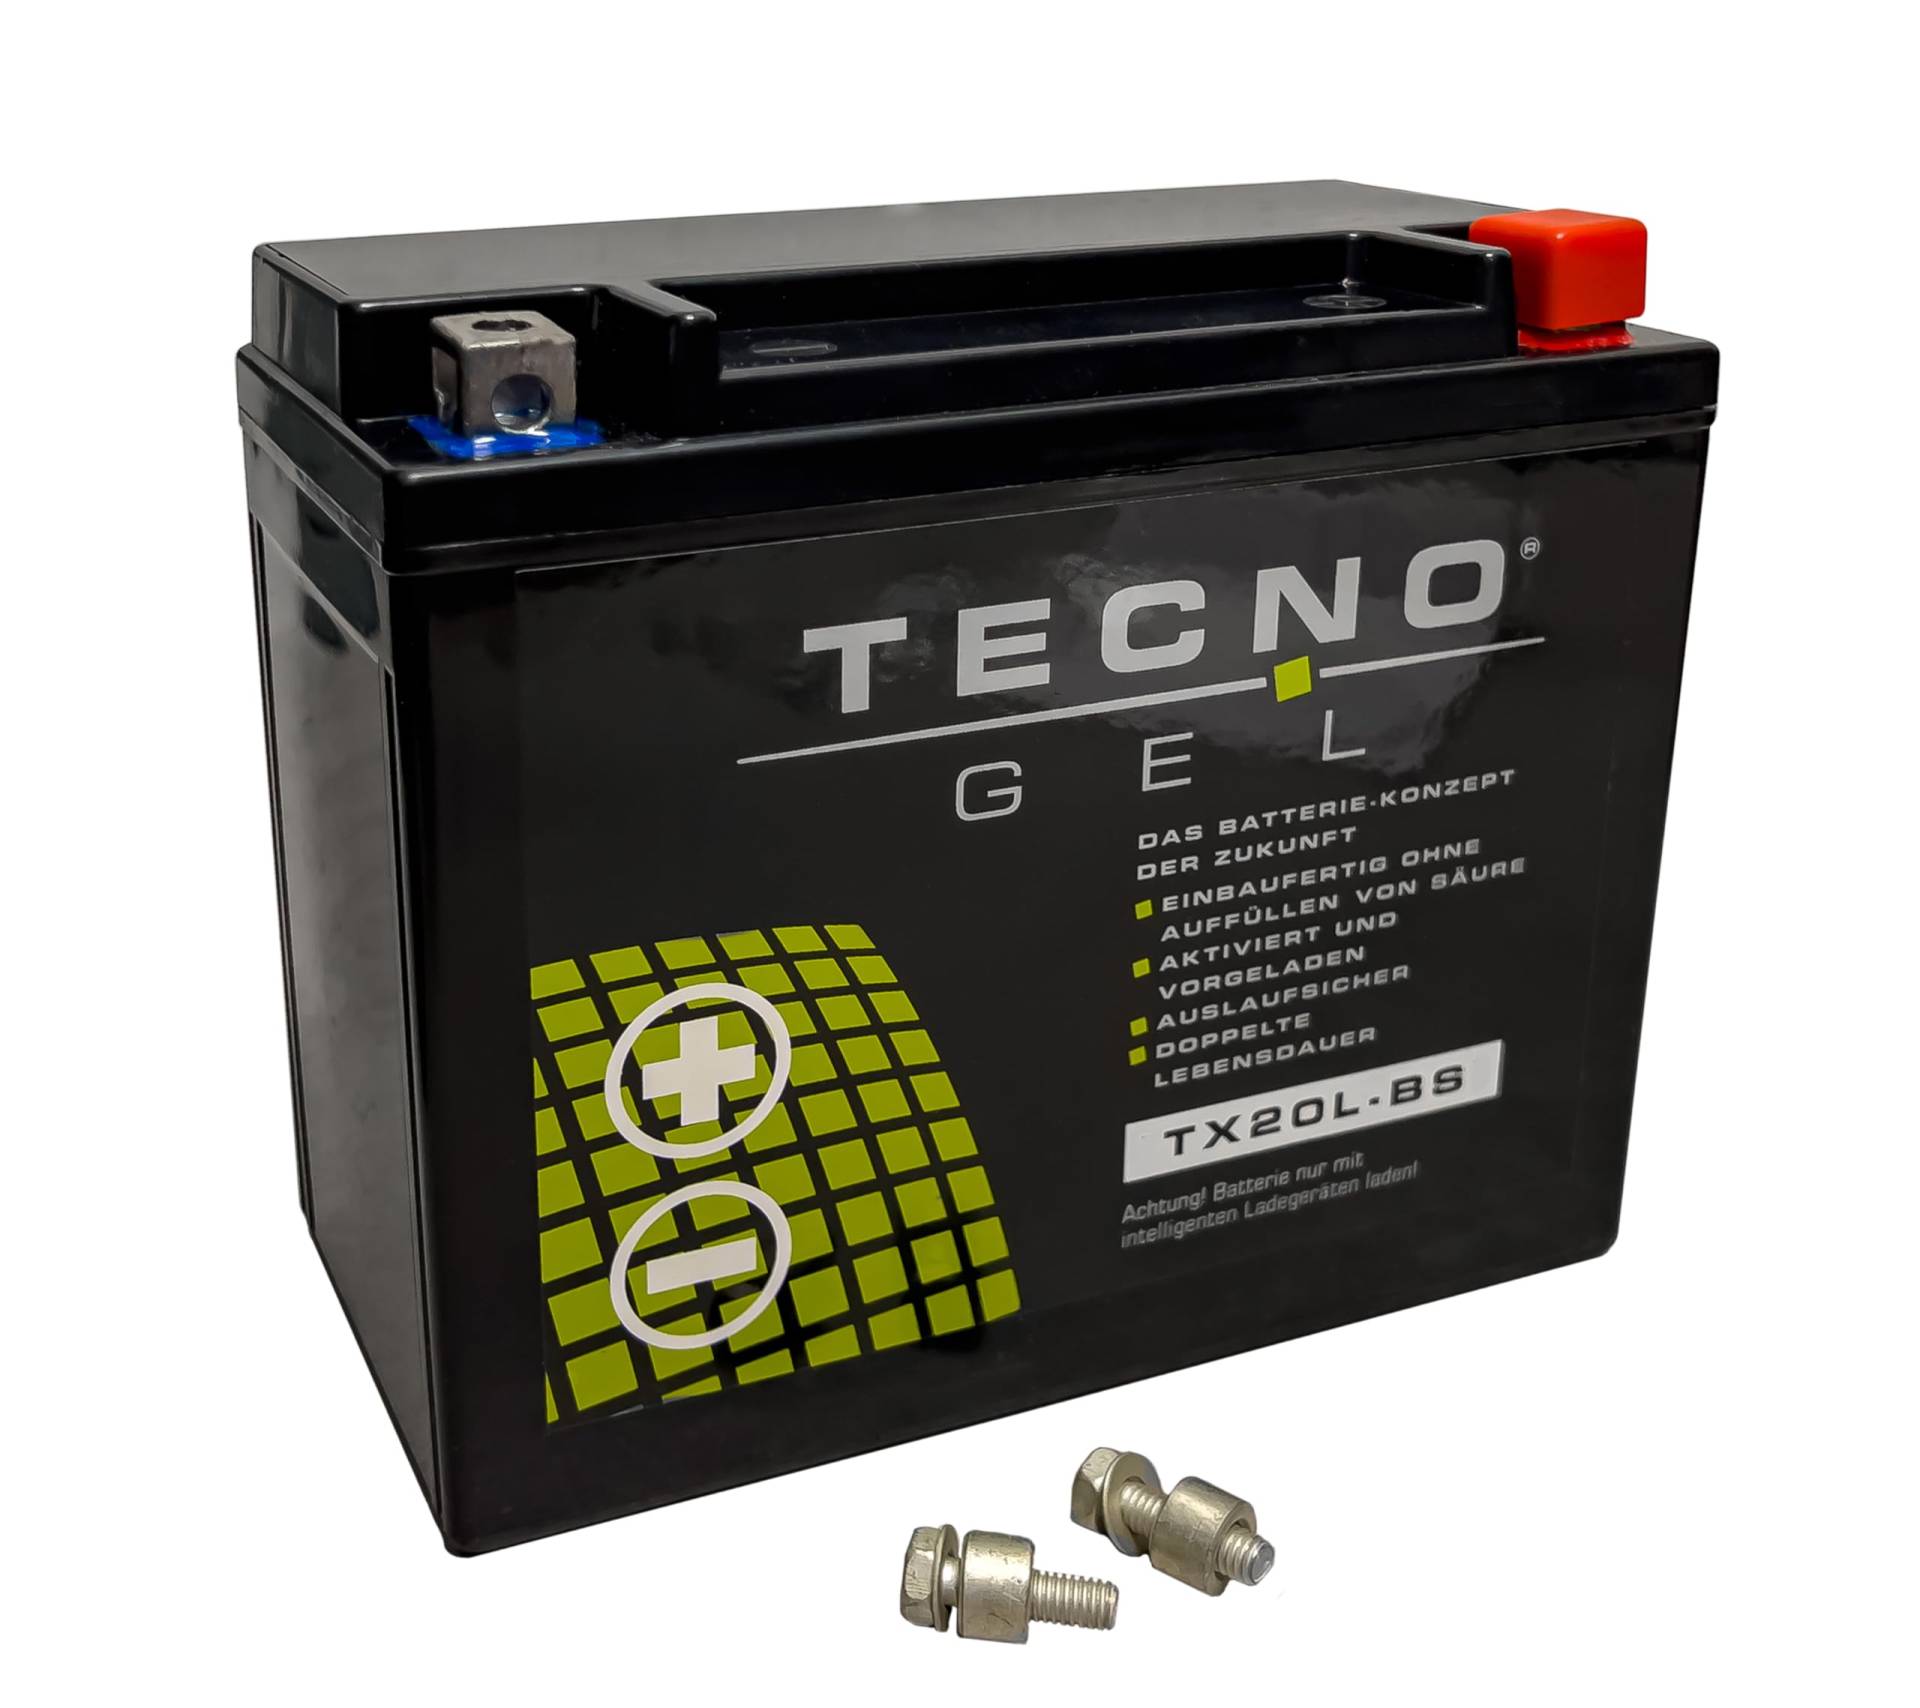 TECNO-GEL Motorrad-Batterie für YTX20L-BS für LINHAI ATV 600 2011-2015, 12V Gel-Batterie 20Ah (DIN 82000), 175x87x155 mm von Wirth-Federn